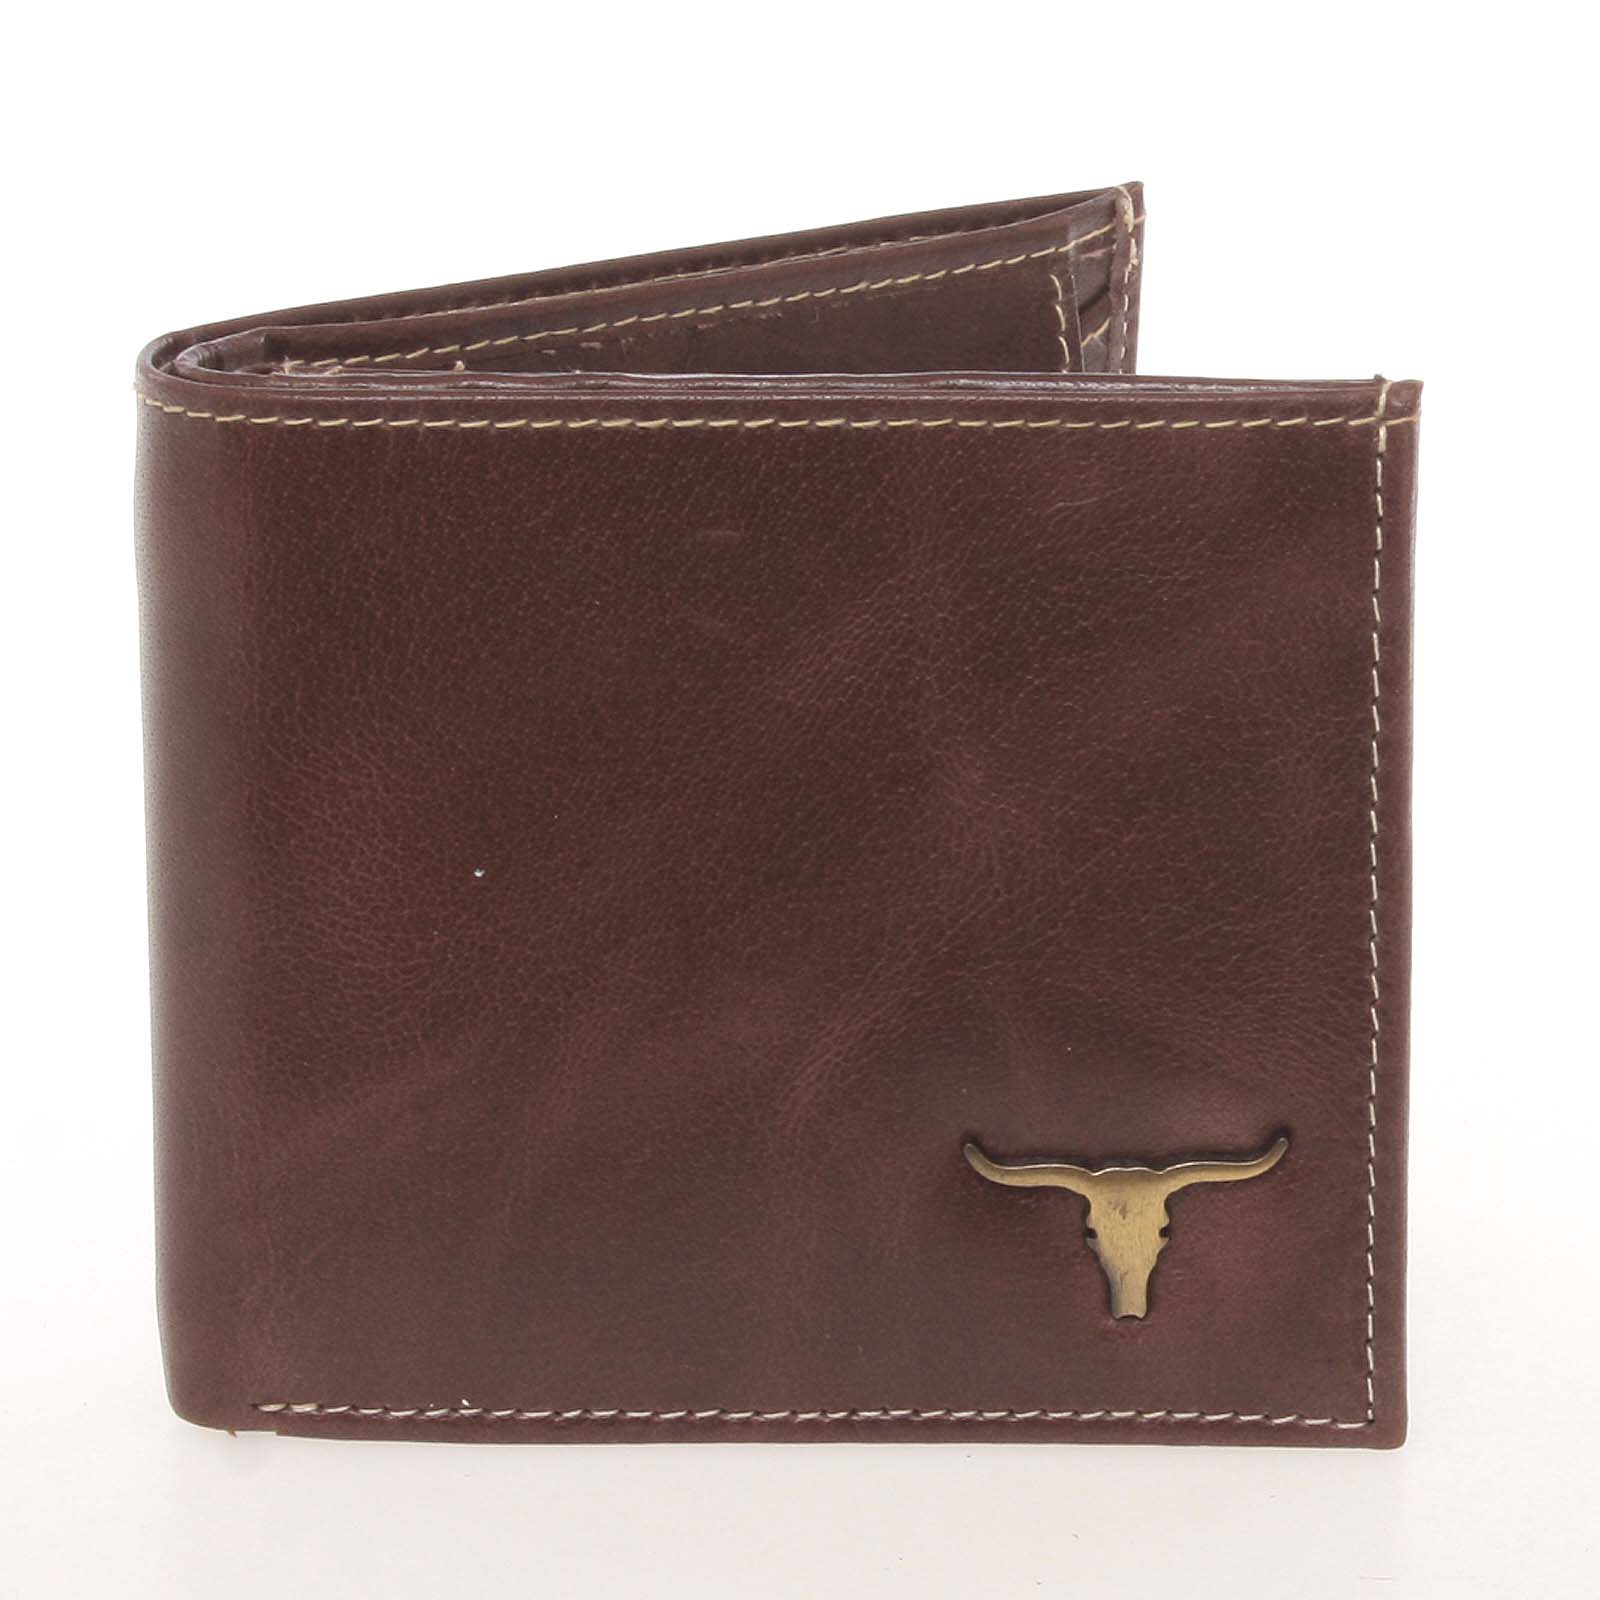 Elegantní kožená peněženka pro muže hnědá - BUFFALO Derry